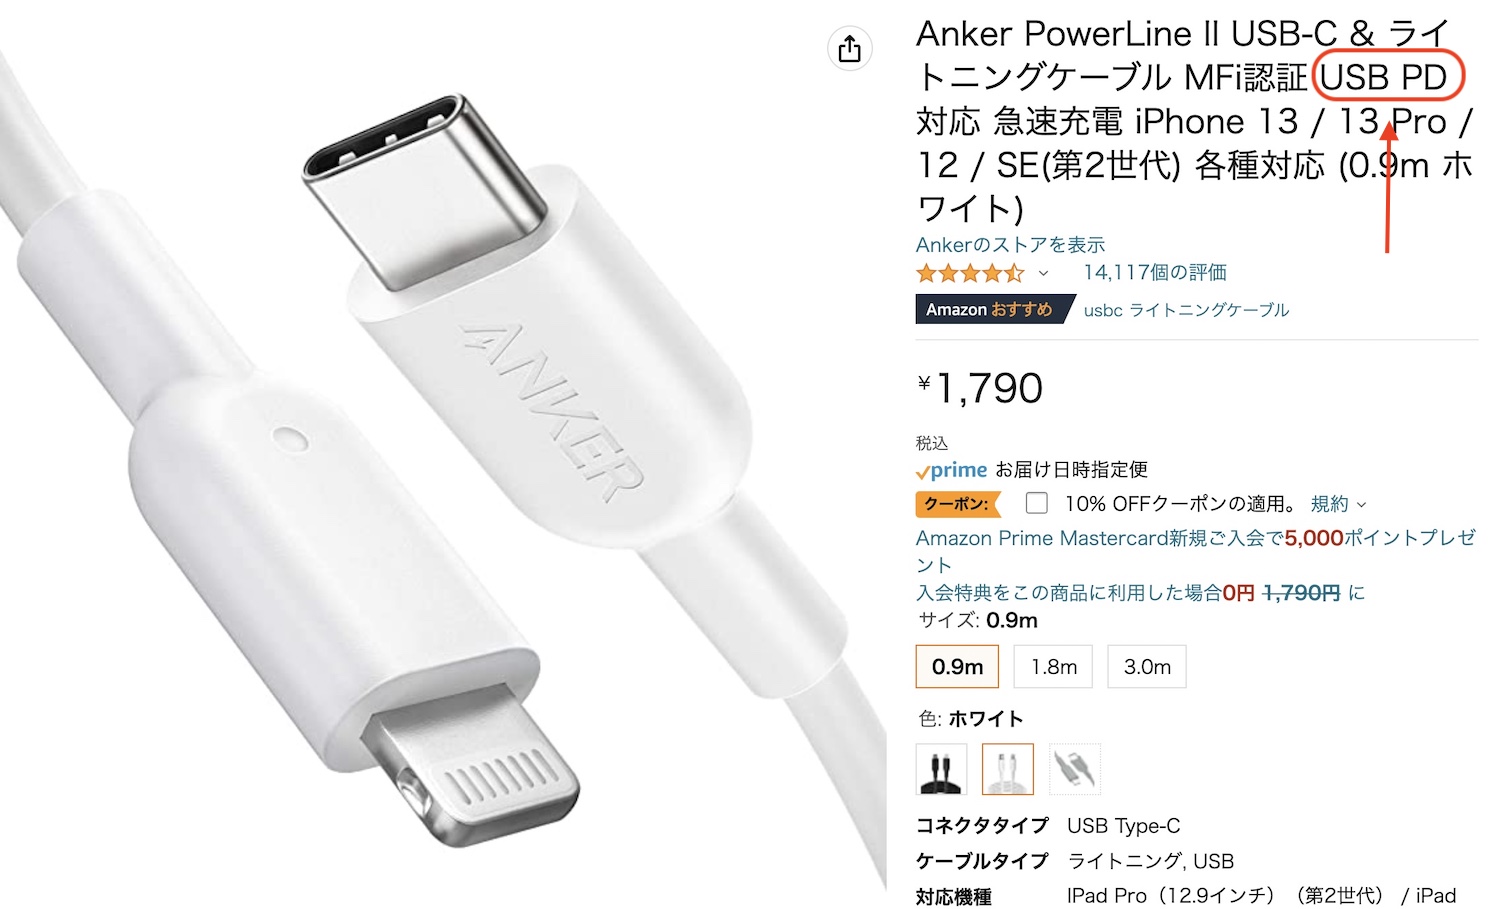 再販ご予約限定送料無料] Anker PowerLine III USB-C ライトニング ケーブル MFi認証 USB PD対応 急速充電  iPhone 13 Pro 12 SE 第3世代 各種対応 0.3m